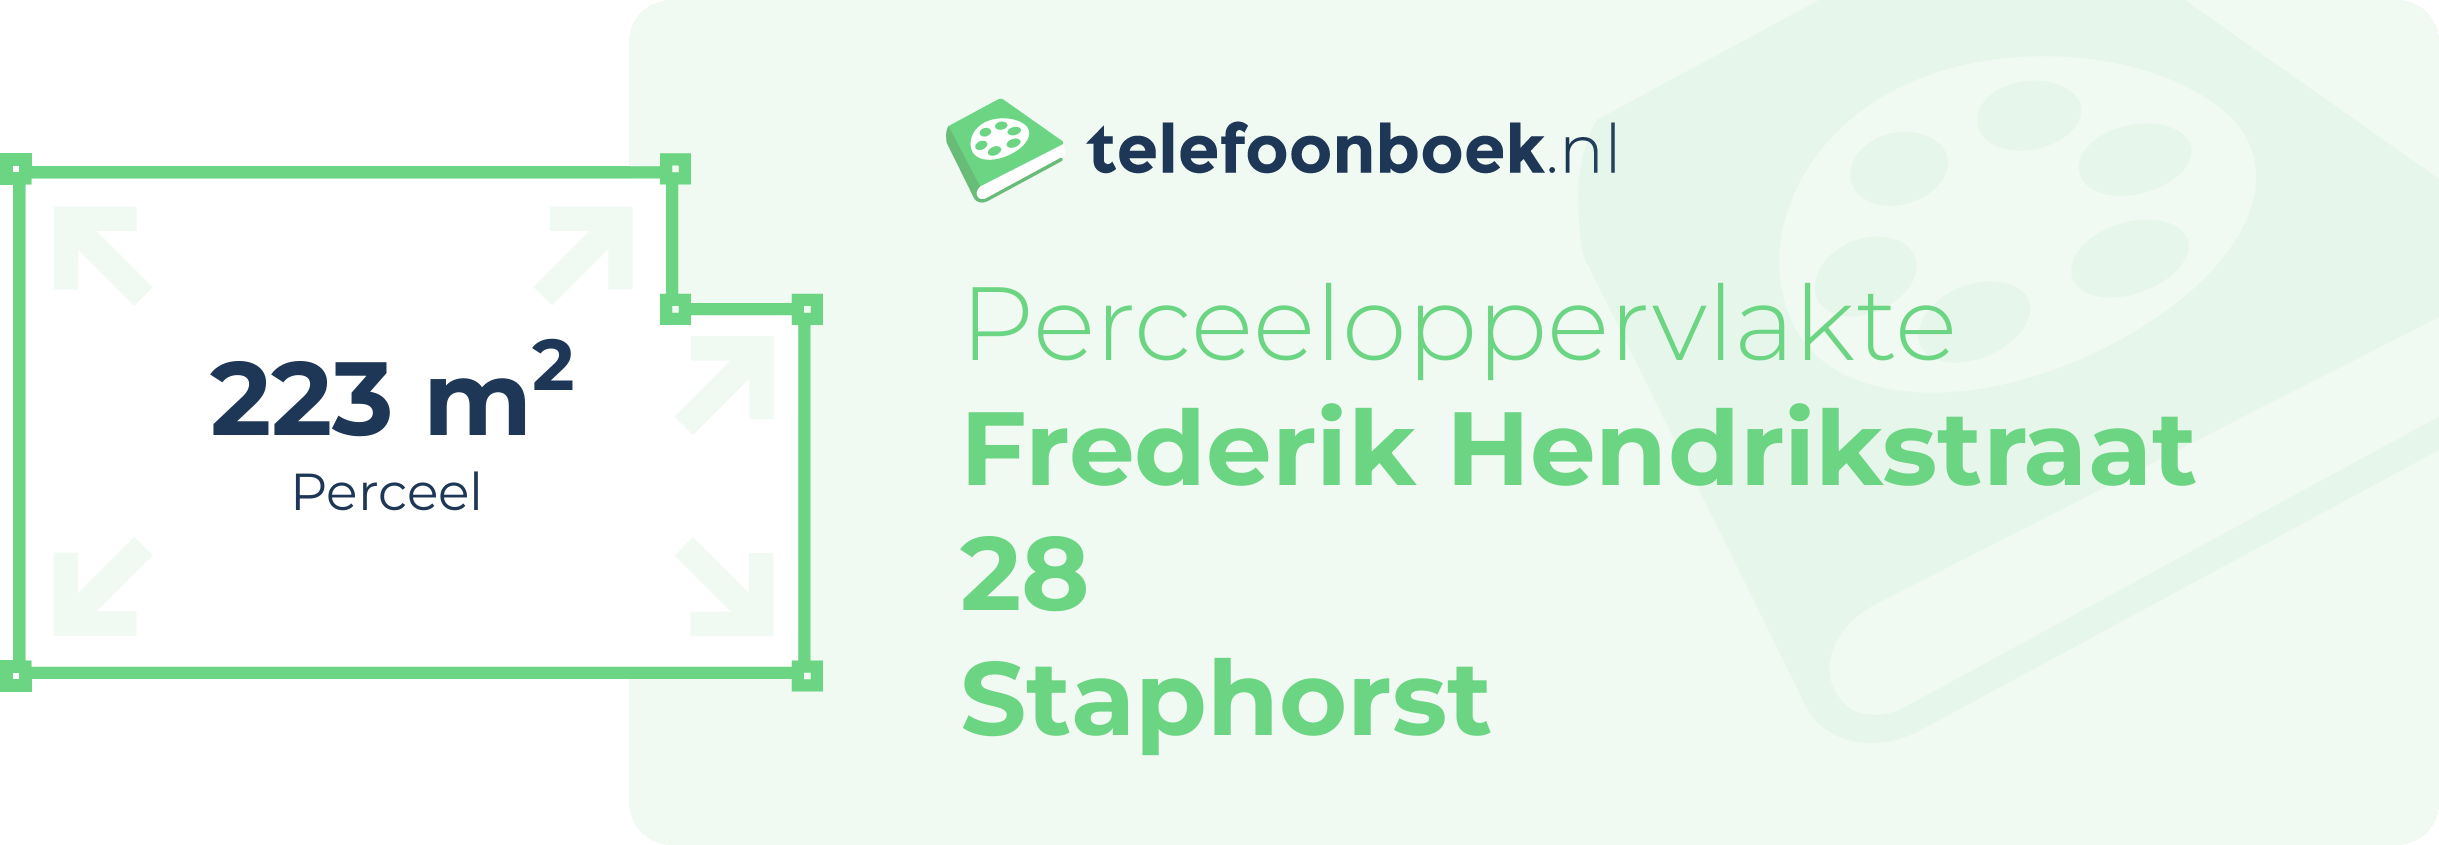 Perceeloppervlakte Frederik Hendrikstraat 28 Staphorst